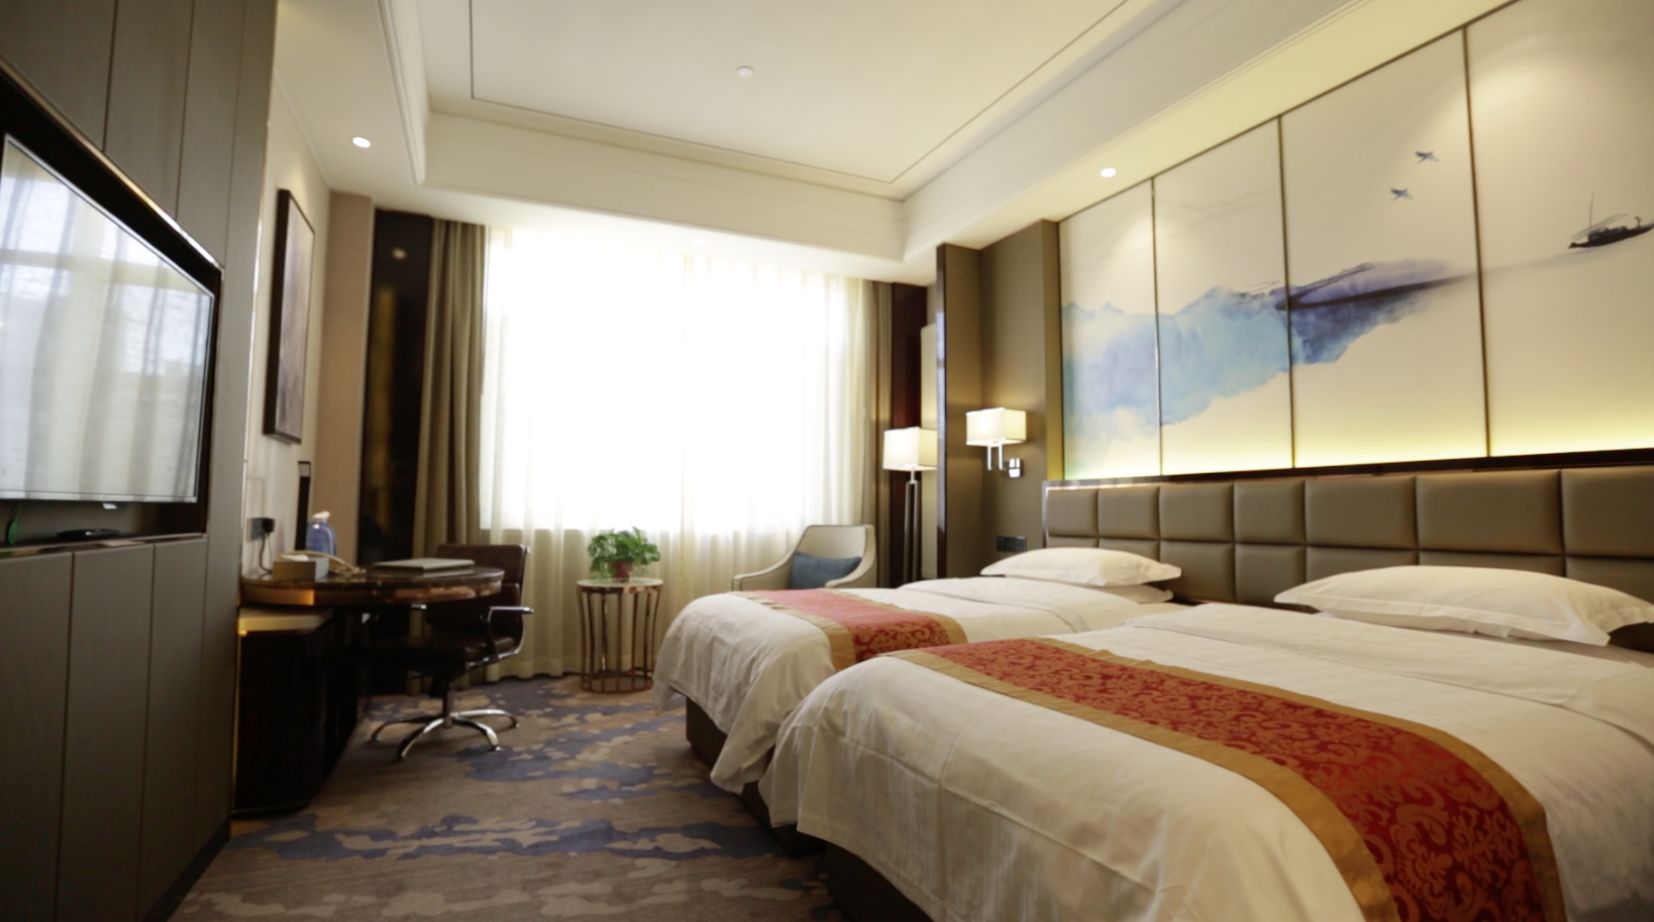 金帝酒店是由赤峰金帝餐饮服务有限公司投资,按照国际四星级标准设计